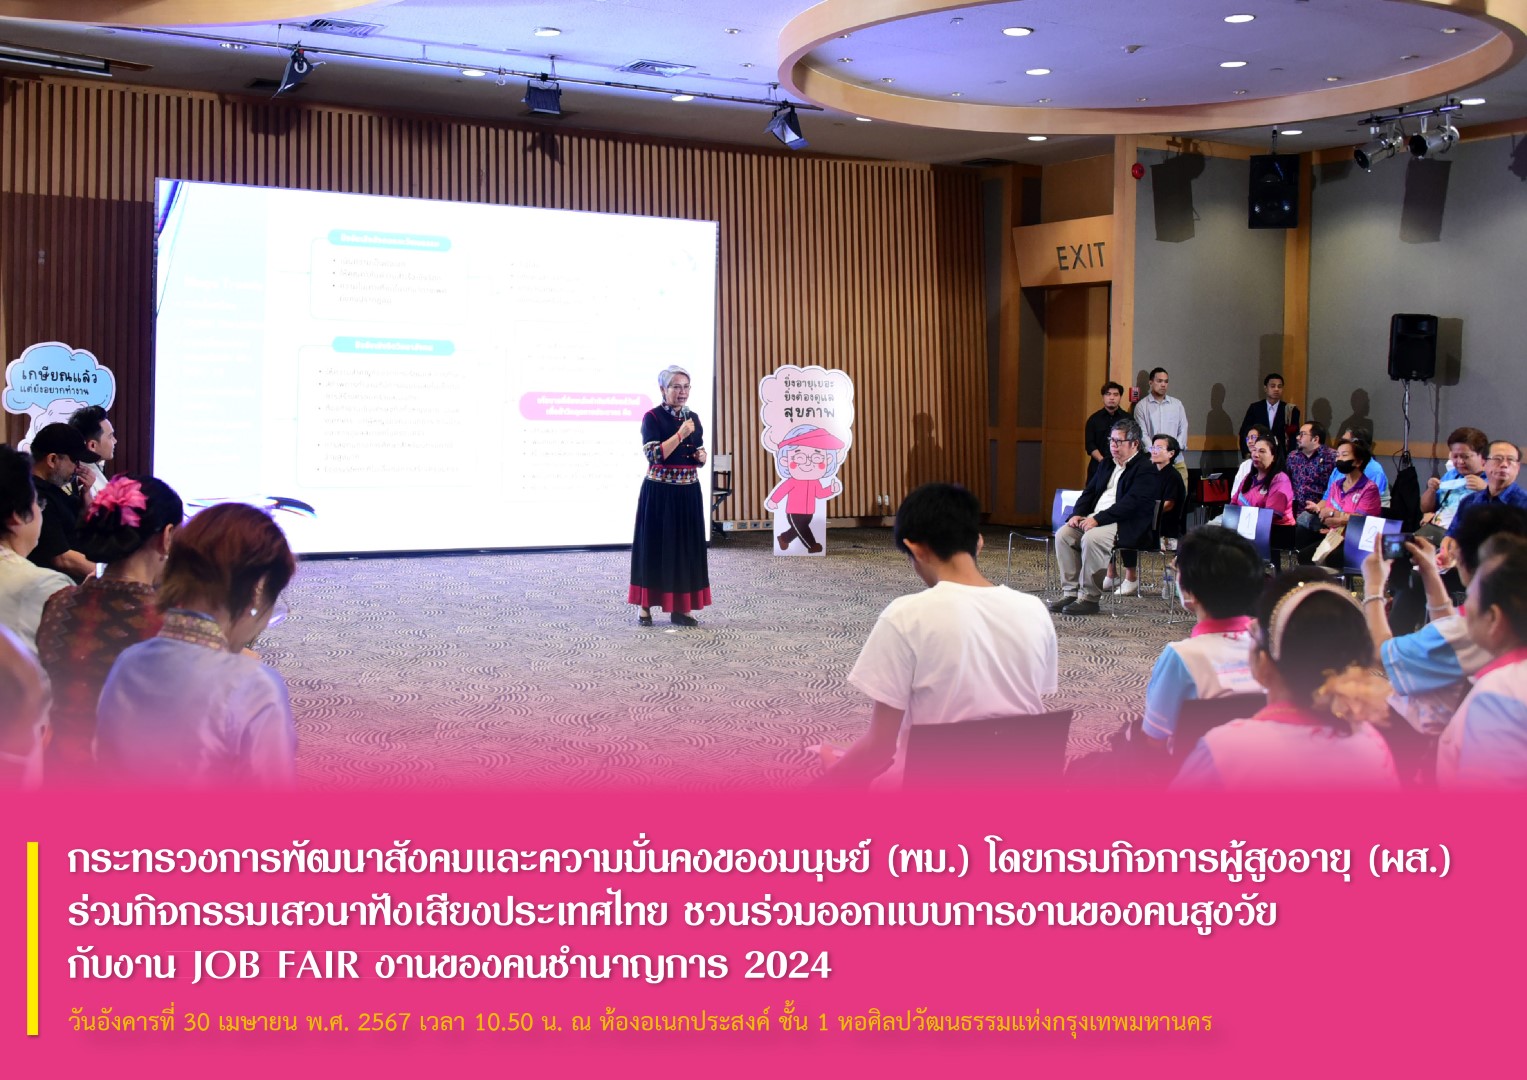 กระทรวงการพัฒนาสังคมและความมั่นคงของมนุษย์ (พม.) โดยกรมกิจการผู้สูงอายุ (ผส.) ร่วมกิจกรรมเสวนาฟังเสียงประเทศไทย ชวนร่วมออกแบบการงานของคนสูงวัย กับงาน JOB FAIR งานของคนชำนาญการ 2024